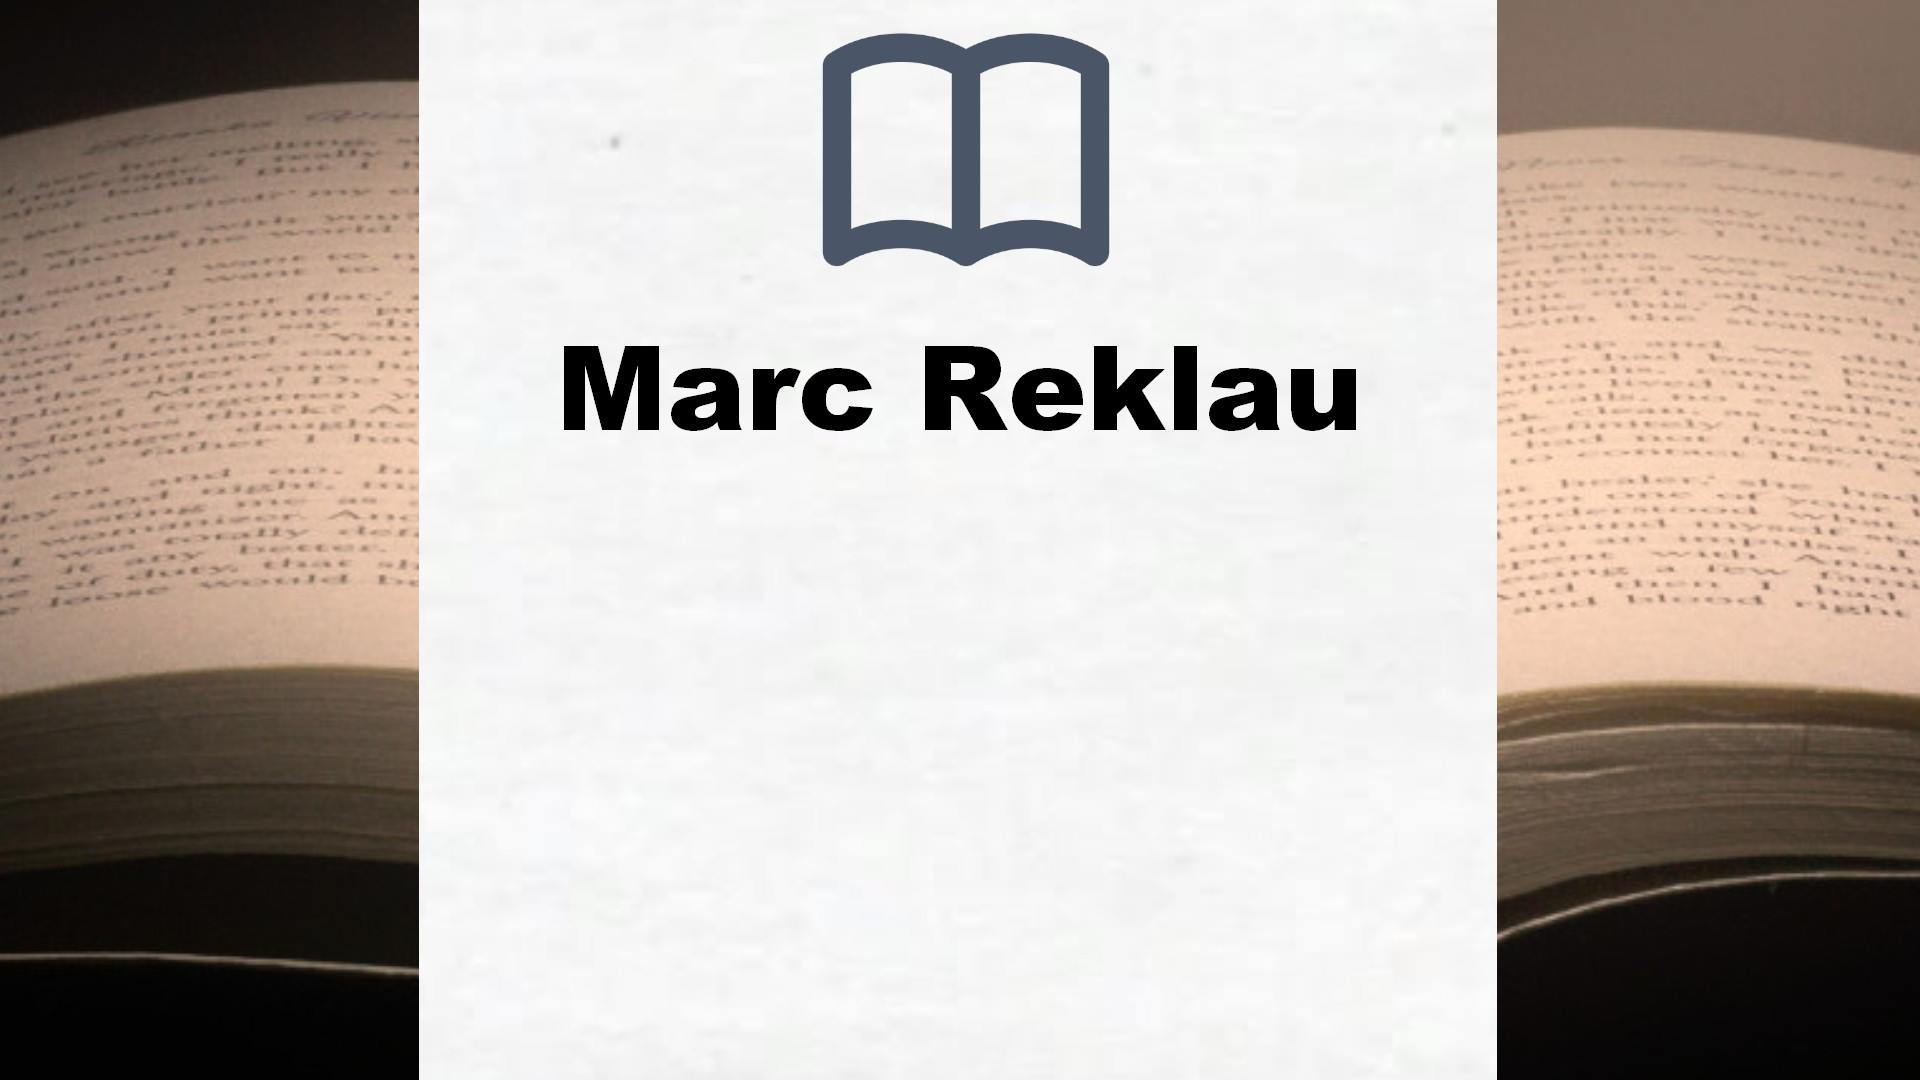 Libros Marc Reklau